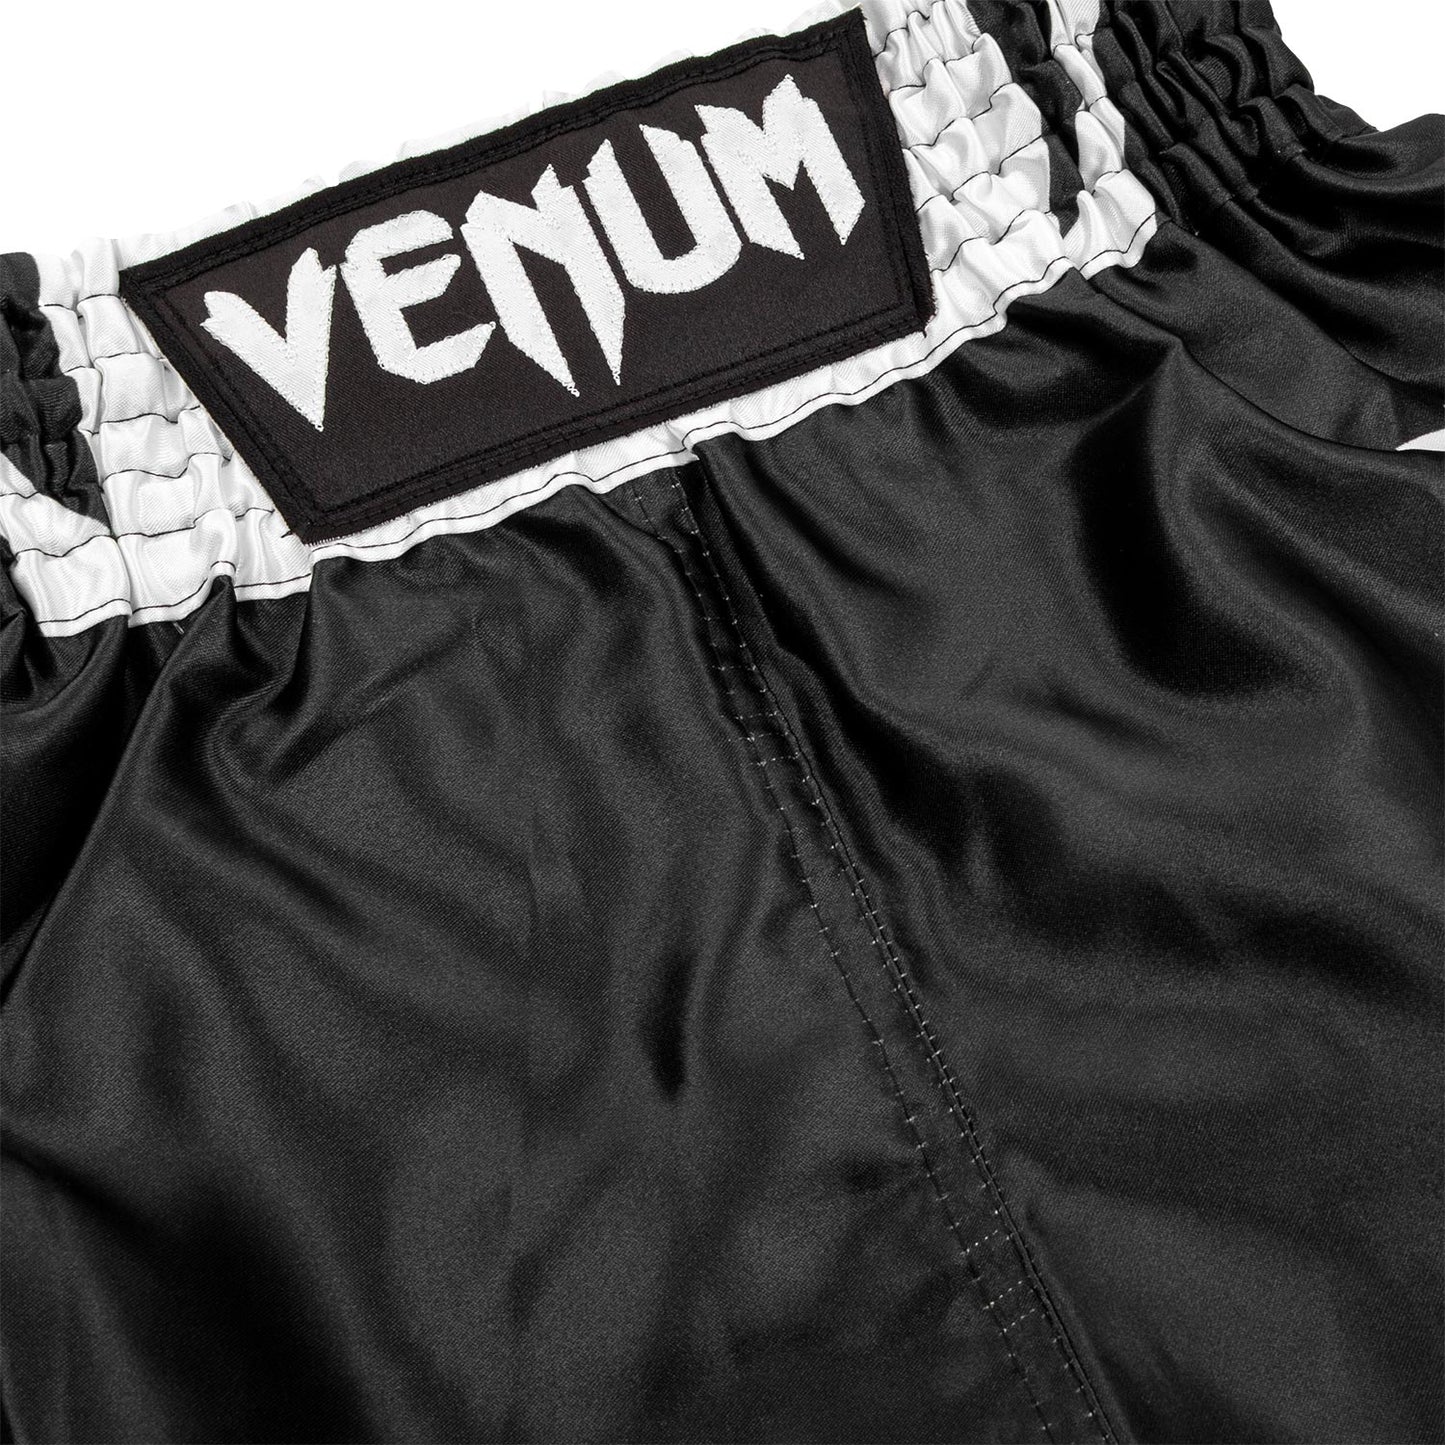 Pantalones de boxeo para Niños Venum Elite – Negro/Blanco